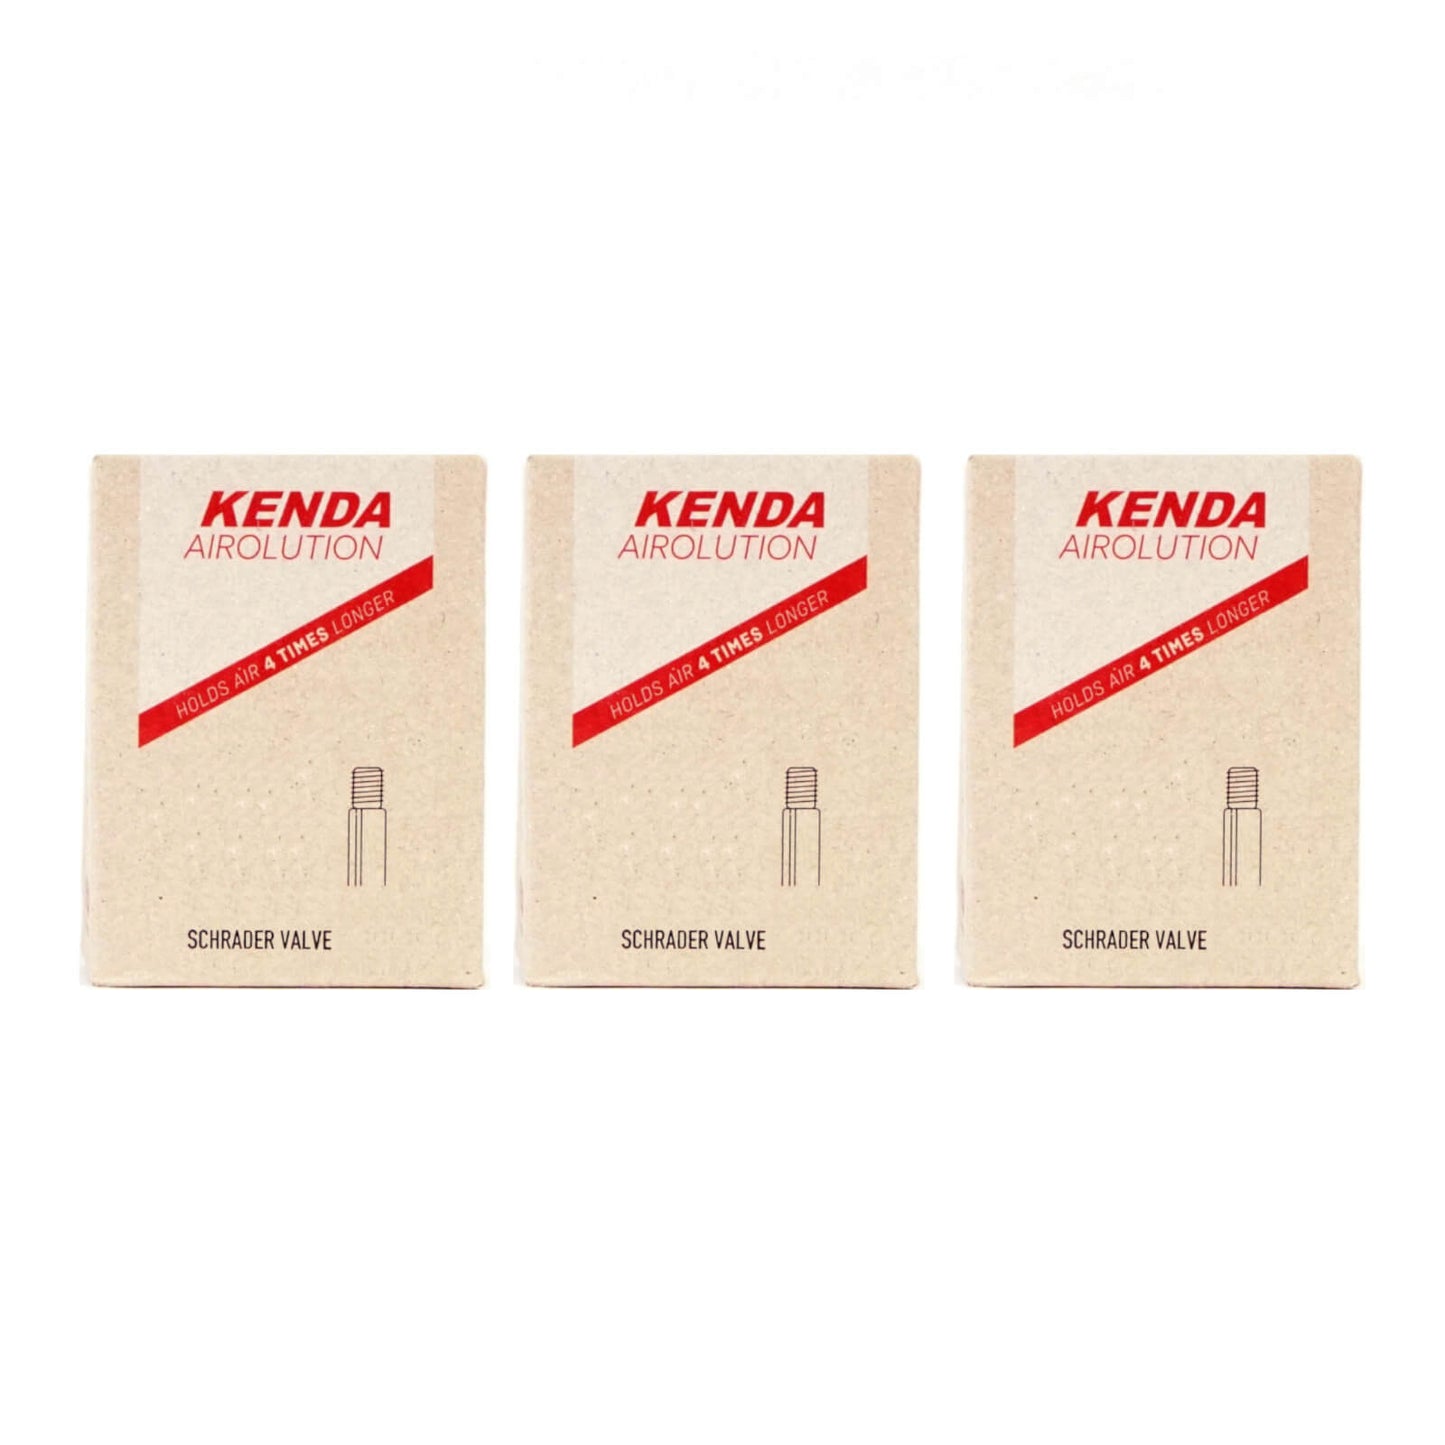 Kenda Airolution 24x2.0-2.4" 24 Inch Schrader Valve Bike Inner Tube Pack of 3